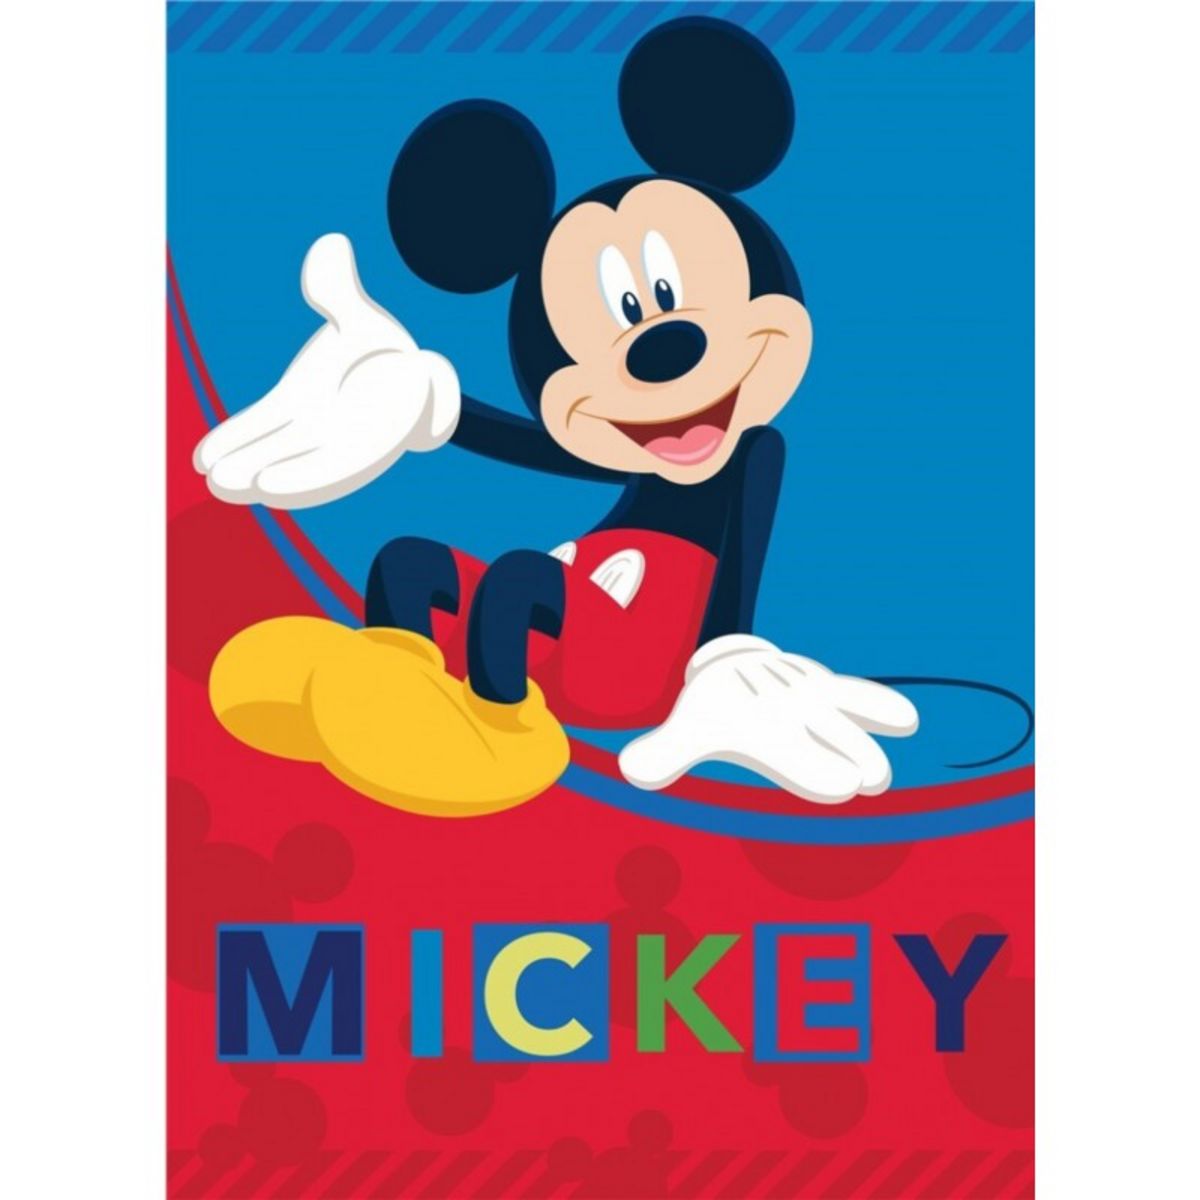 Couverture Mickey Mouse en flanelle douce, plaid Disney en peluche